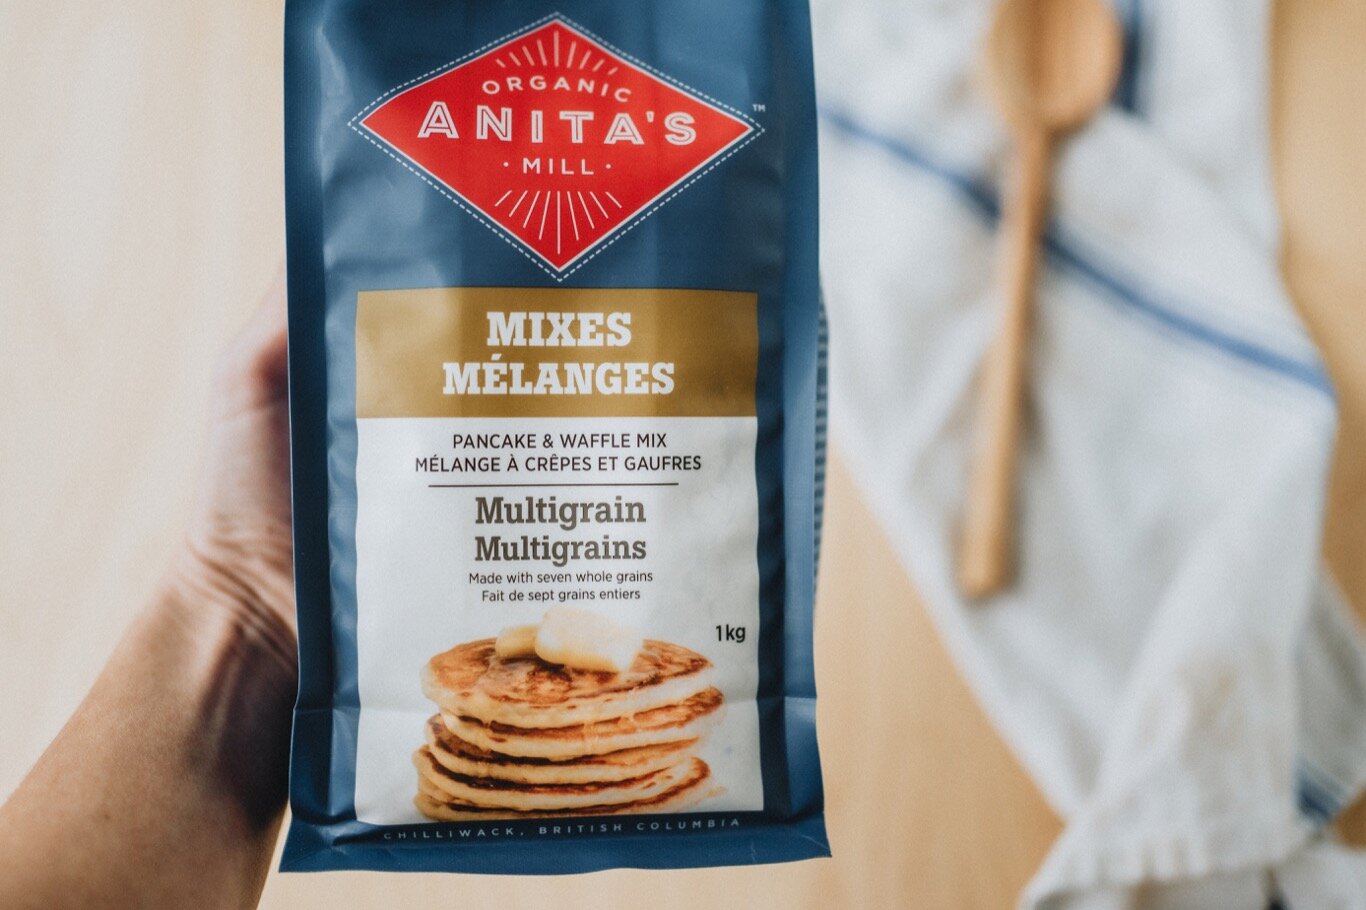 Anitas-Organic-Mill-Product-2020-pancake-waffle-mix-multigrain-horizontal-web.jpg